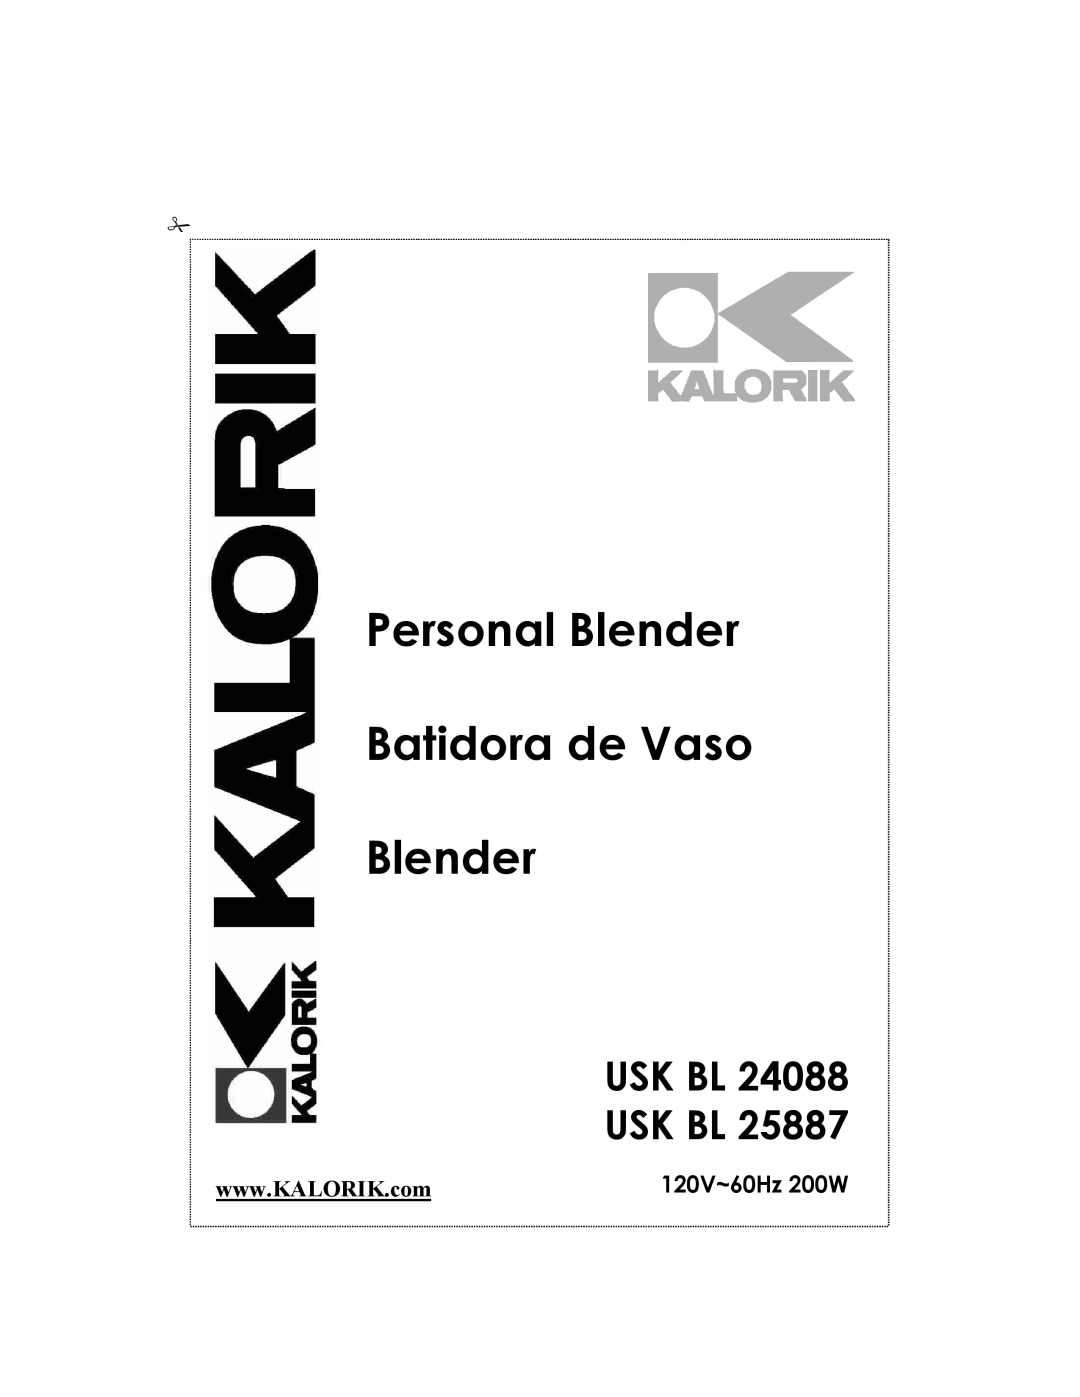 Kalorik USK BL 24088, USK BL 25887 manual Usk Bl Usk Bl, Personal Blender Batidora de Vaso Blender, 120V~60Hz 200W 